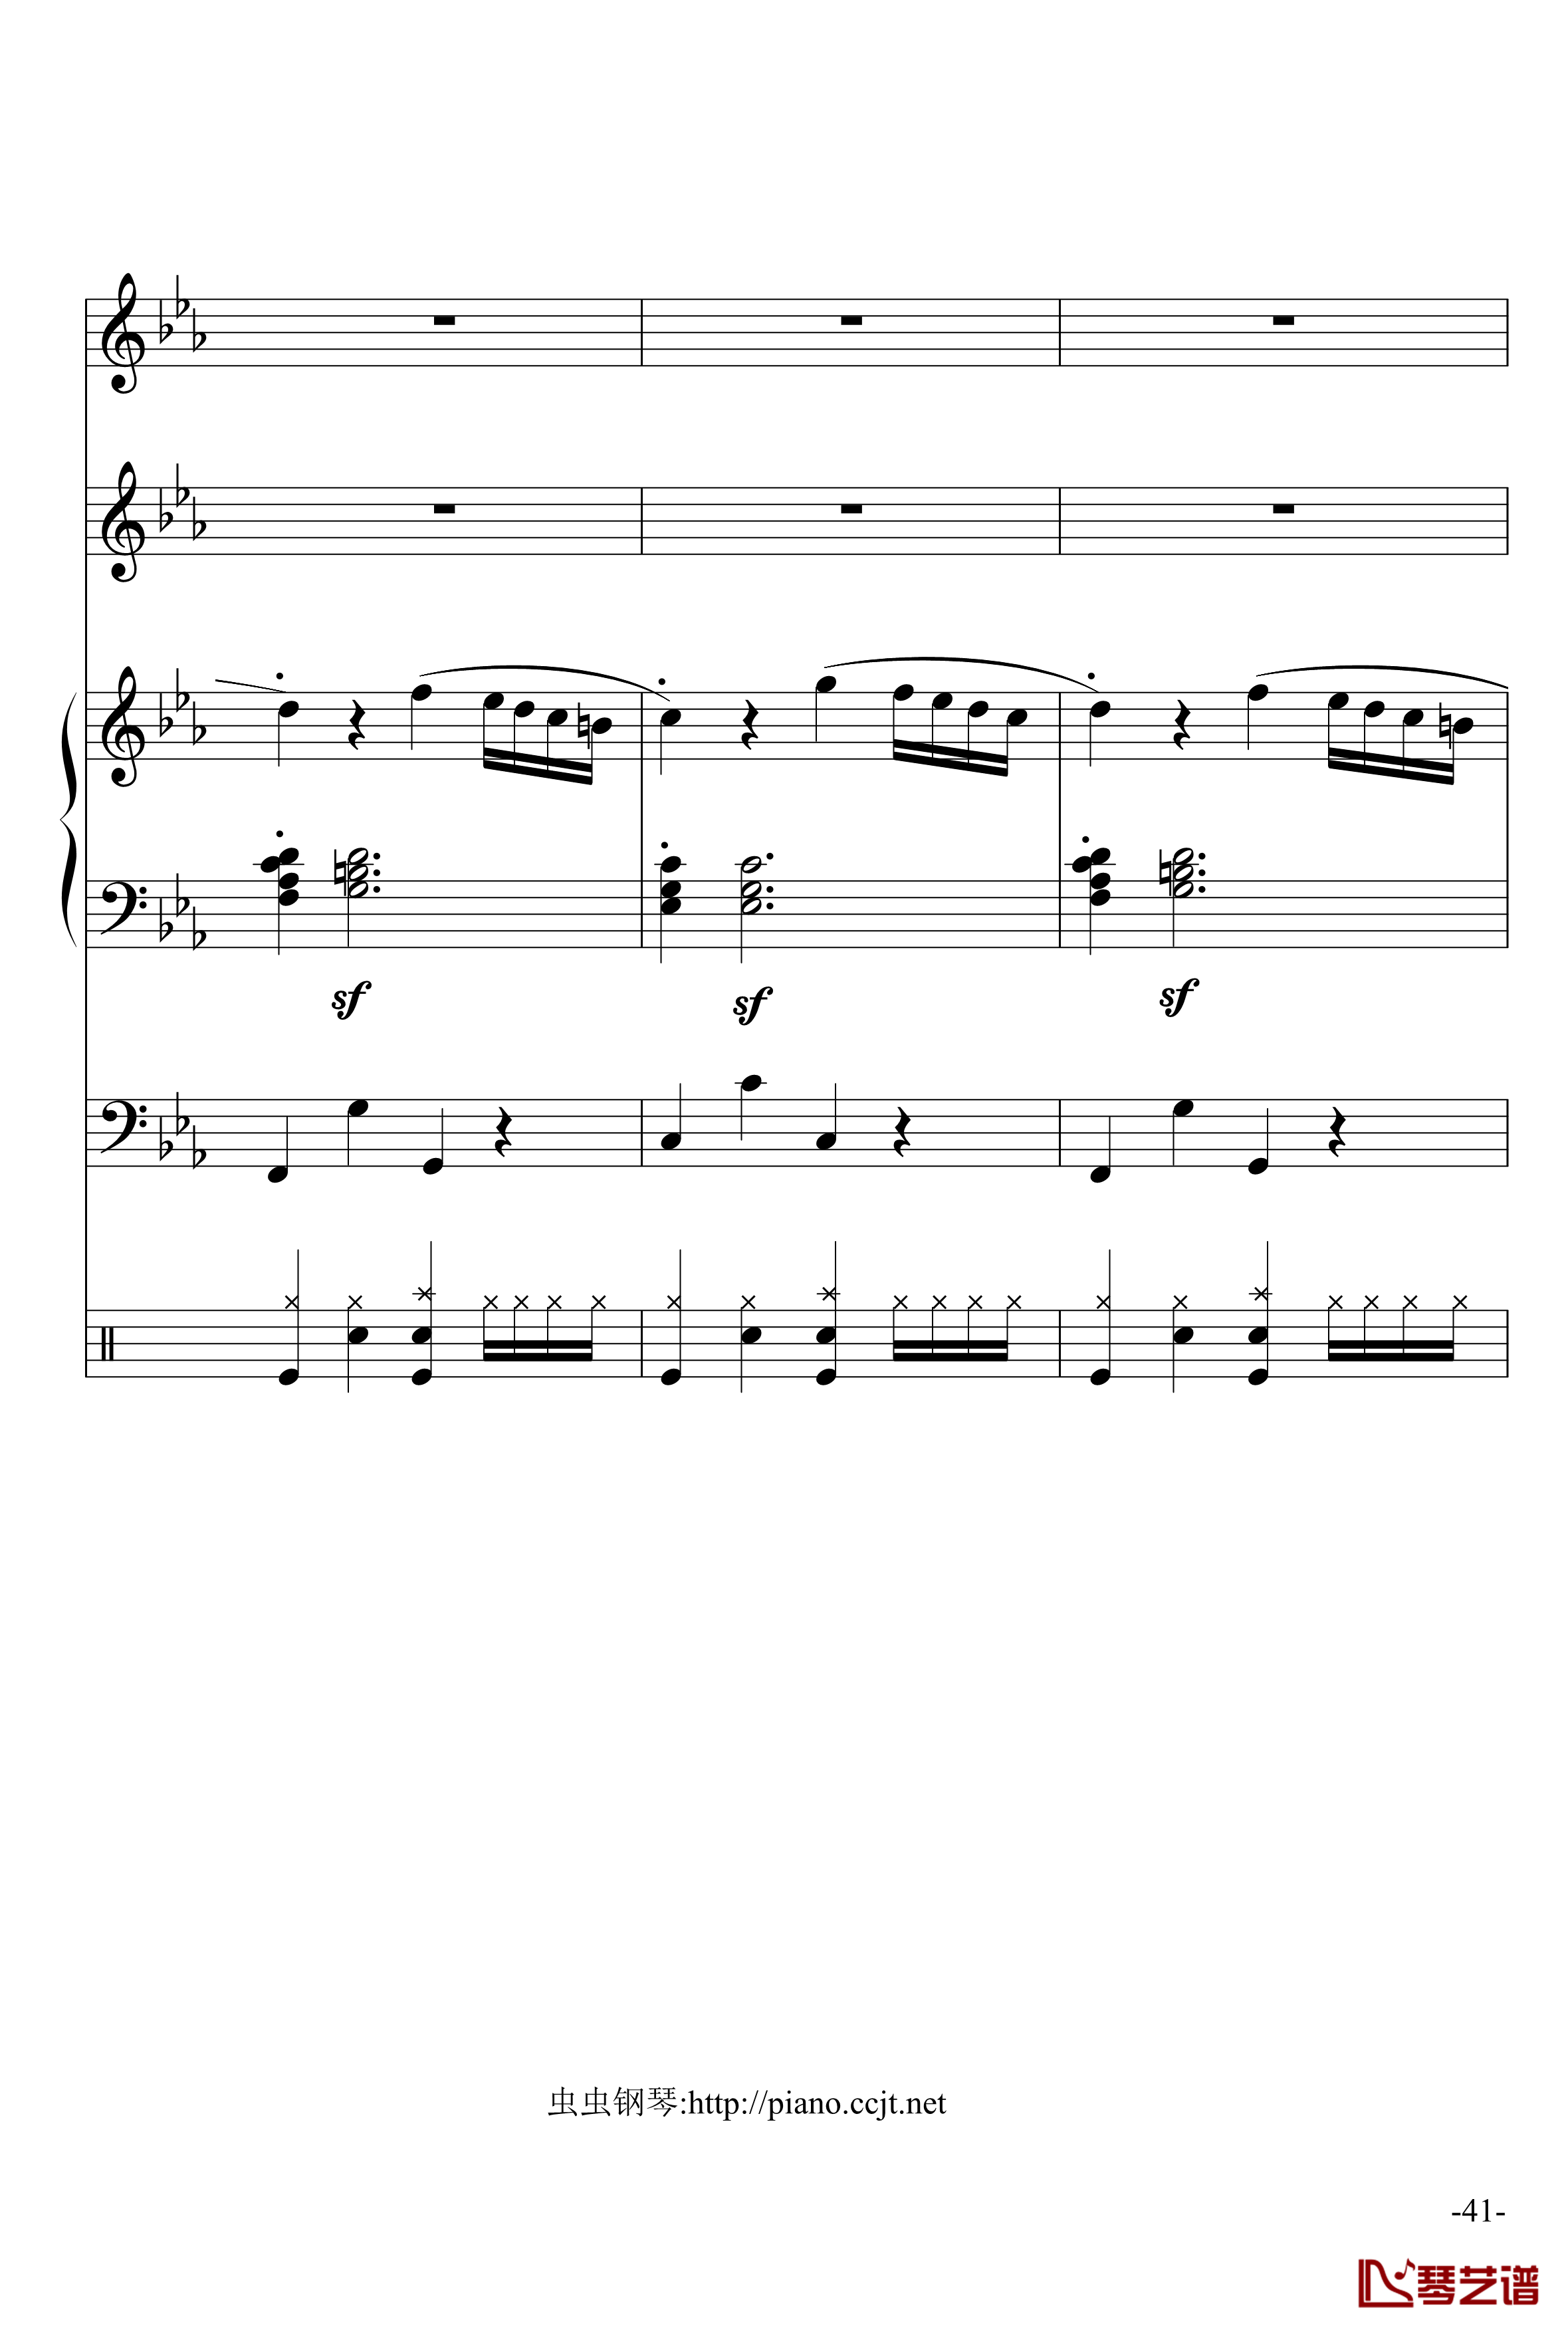 悲怆奏鸣曲钢琴谱-加小乐队-贝多芬-beethoven41